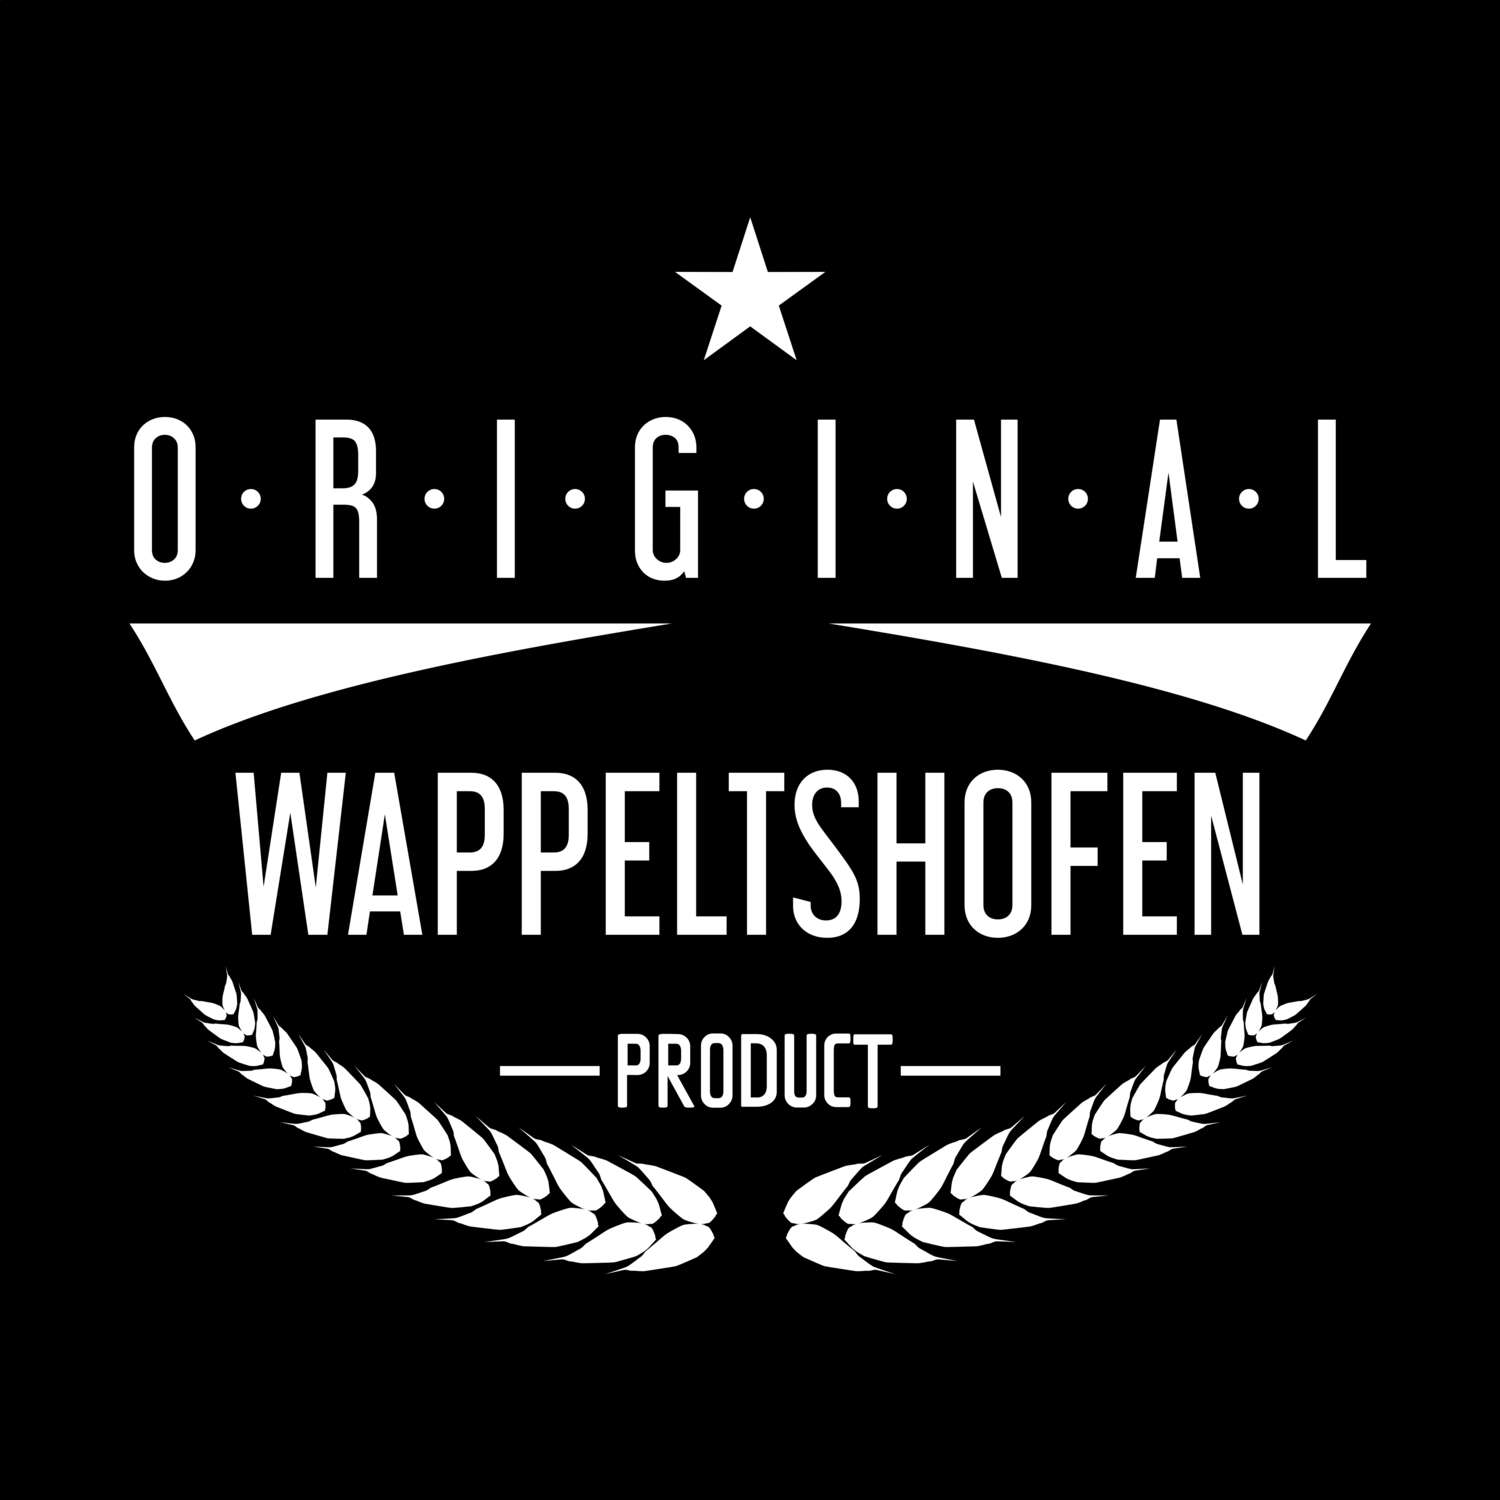 Wappeltshofen T-Shirt »Original Product«